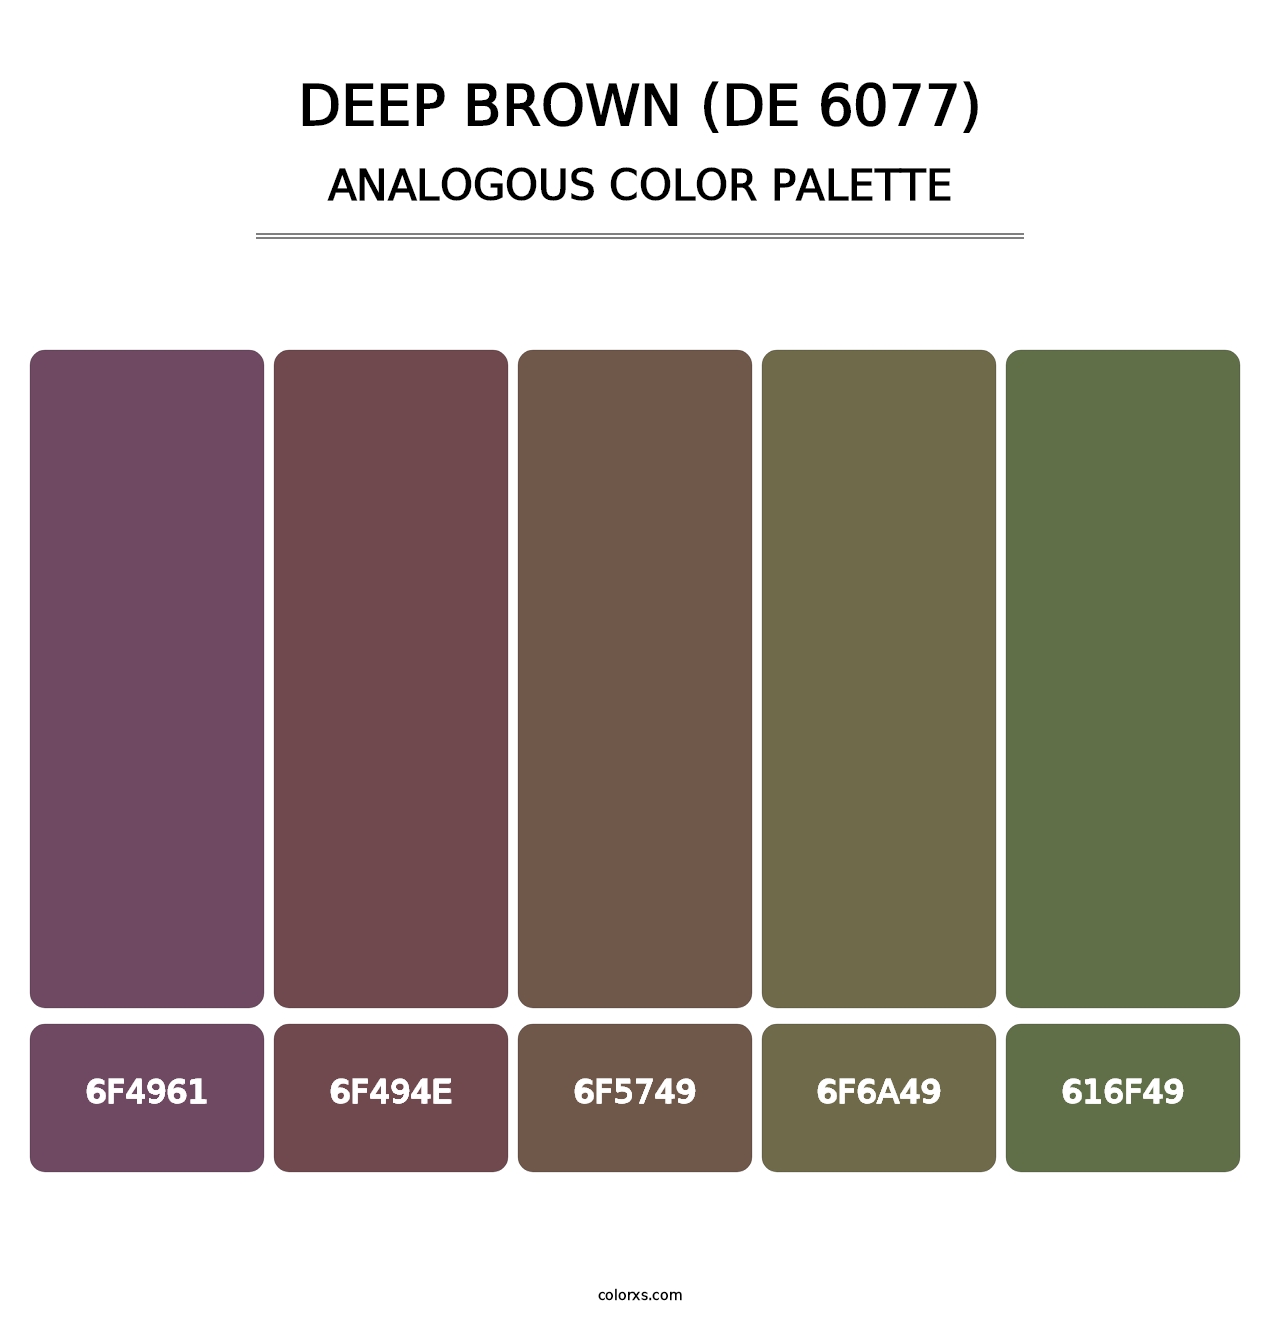 Deep Brown (DE 6077) - Analogous Color Palette